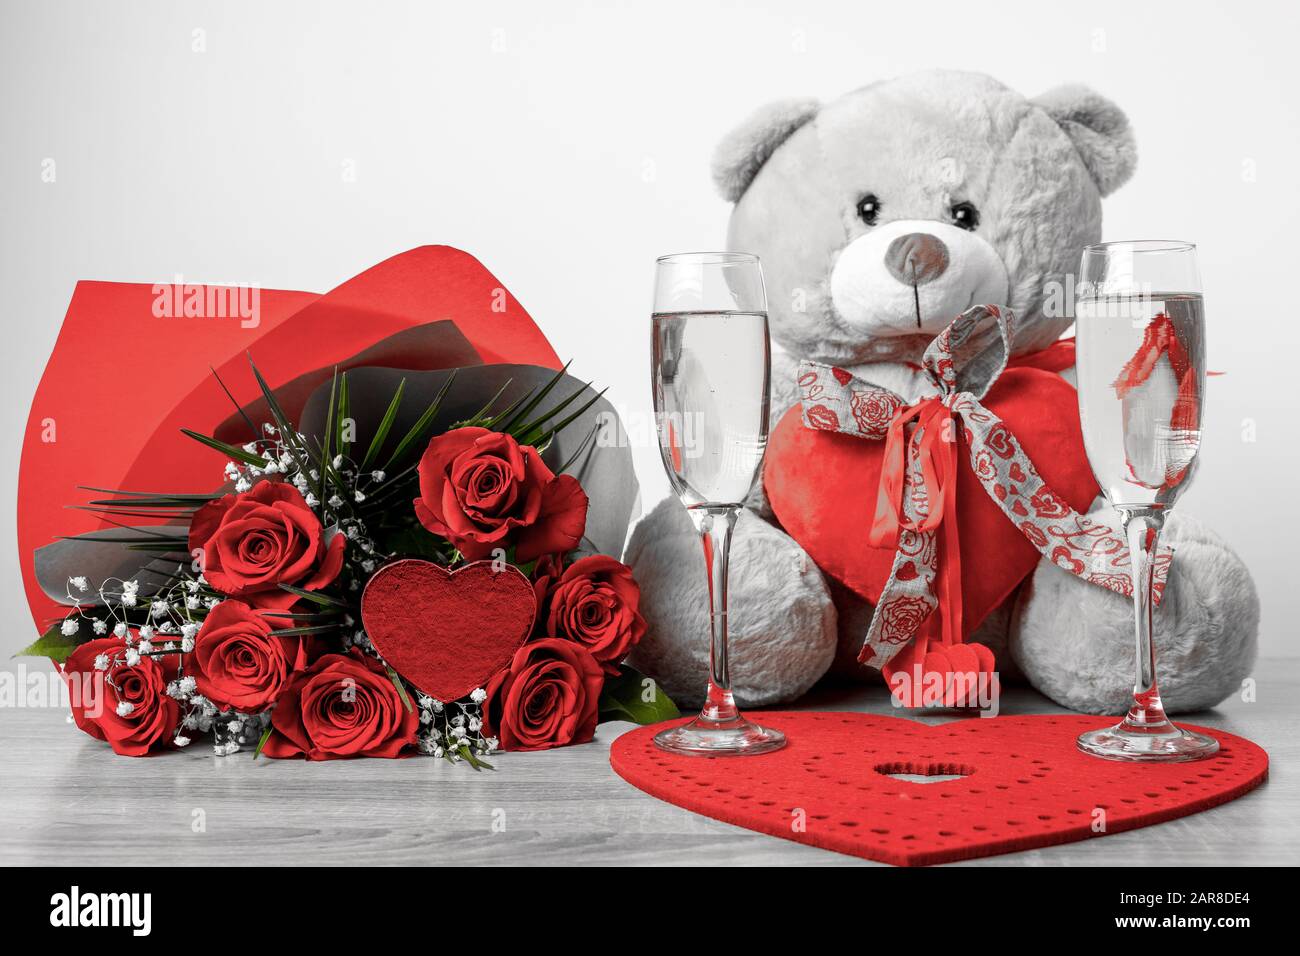  Regalos del día de San Valentín, oso de rosa, regalos